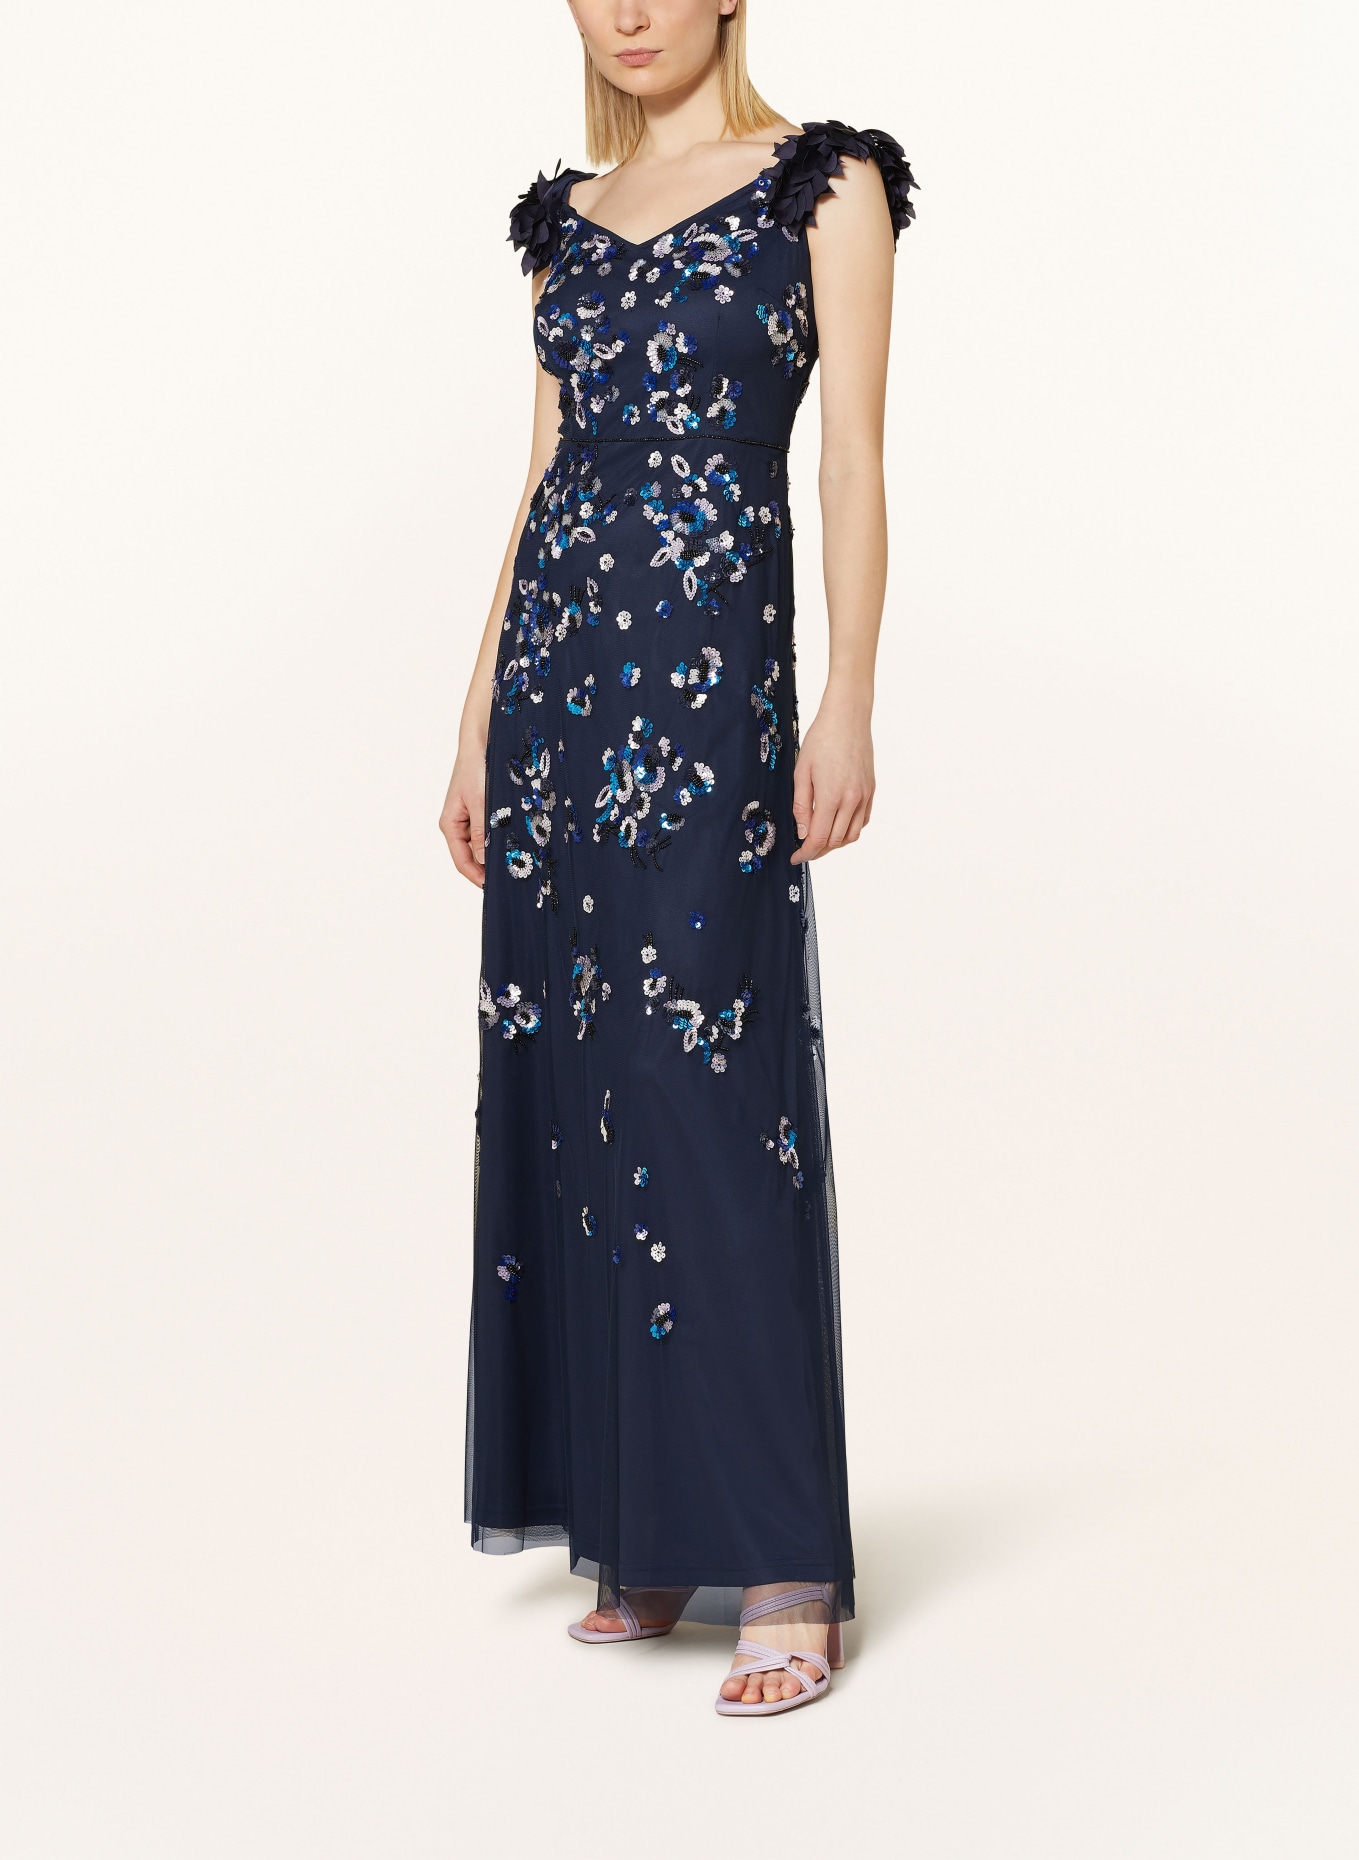 ADRIANNA PAPELL Abendkleid mit Pailletten und Zierperlen, Farbe: DUNKELBLAU/ BLAU/ SILBER (Bild 2)